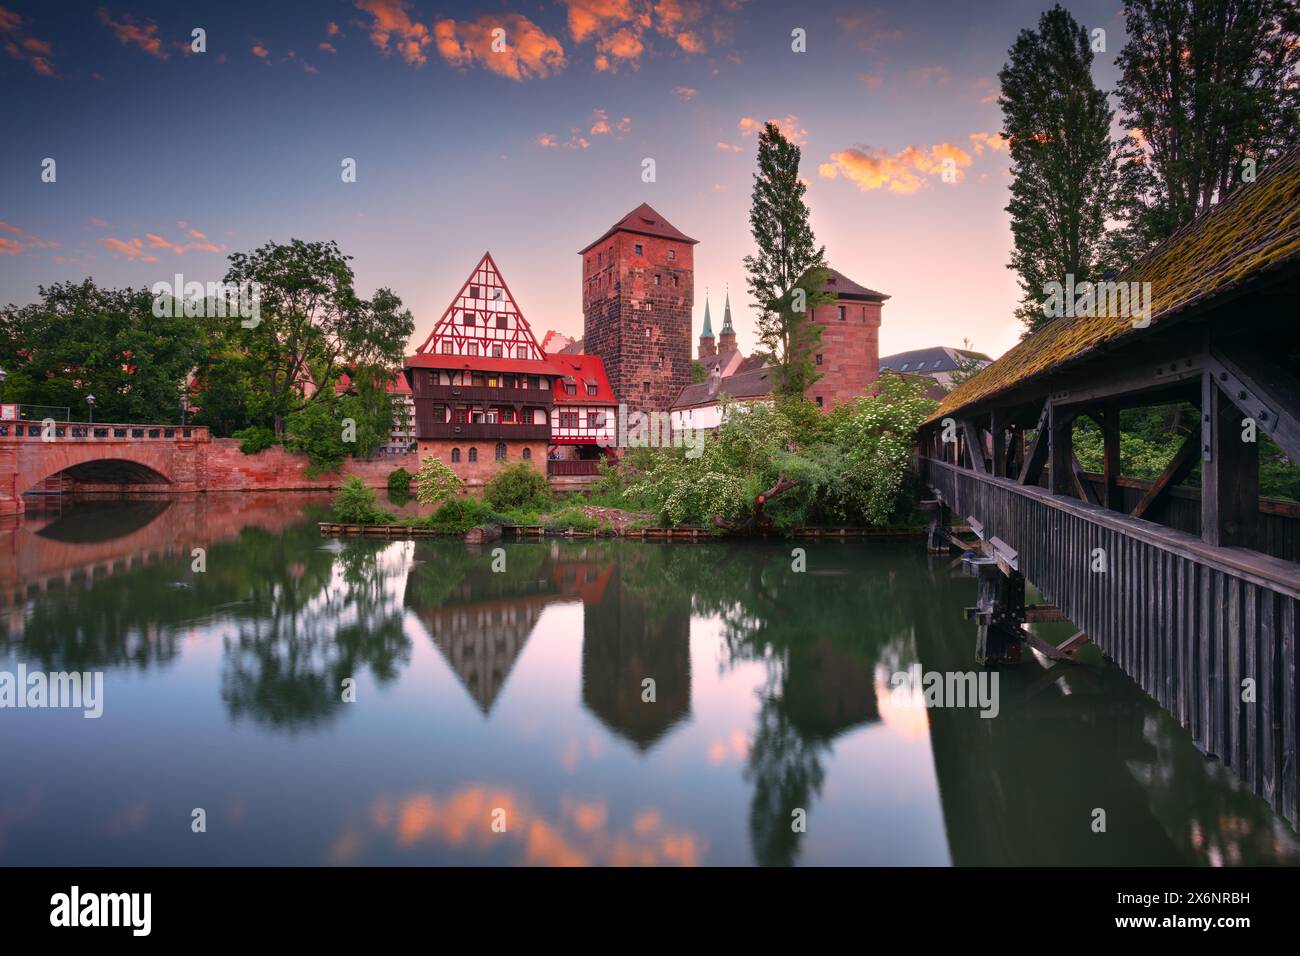 Norimberga, Germania. Immagine della città vecchia di Norimberga, in Germania, con la splendida alba primaverile. Foto Stock